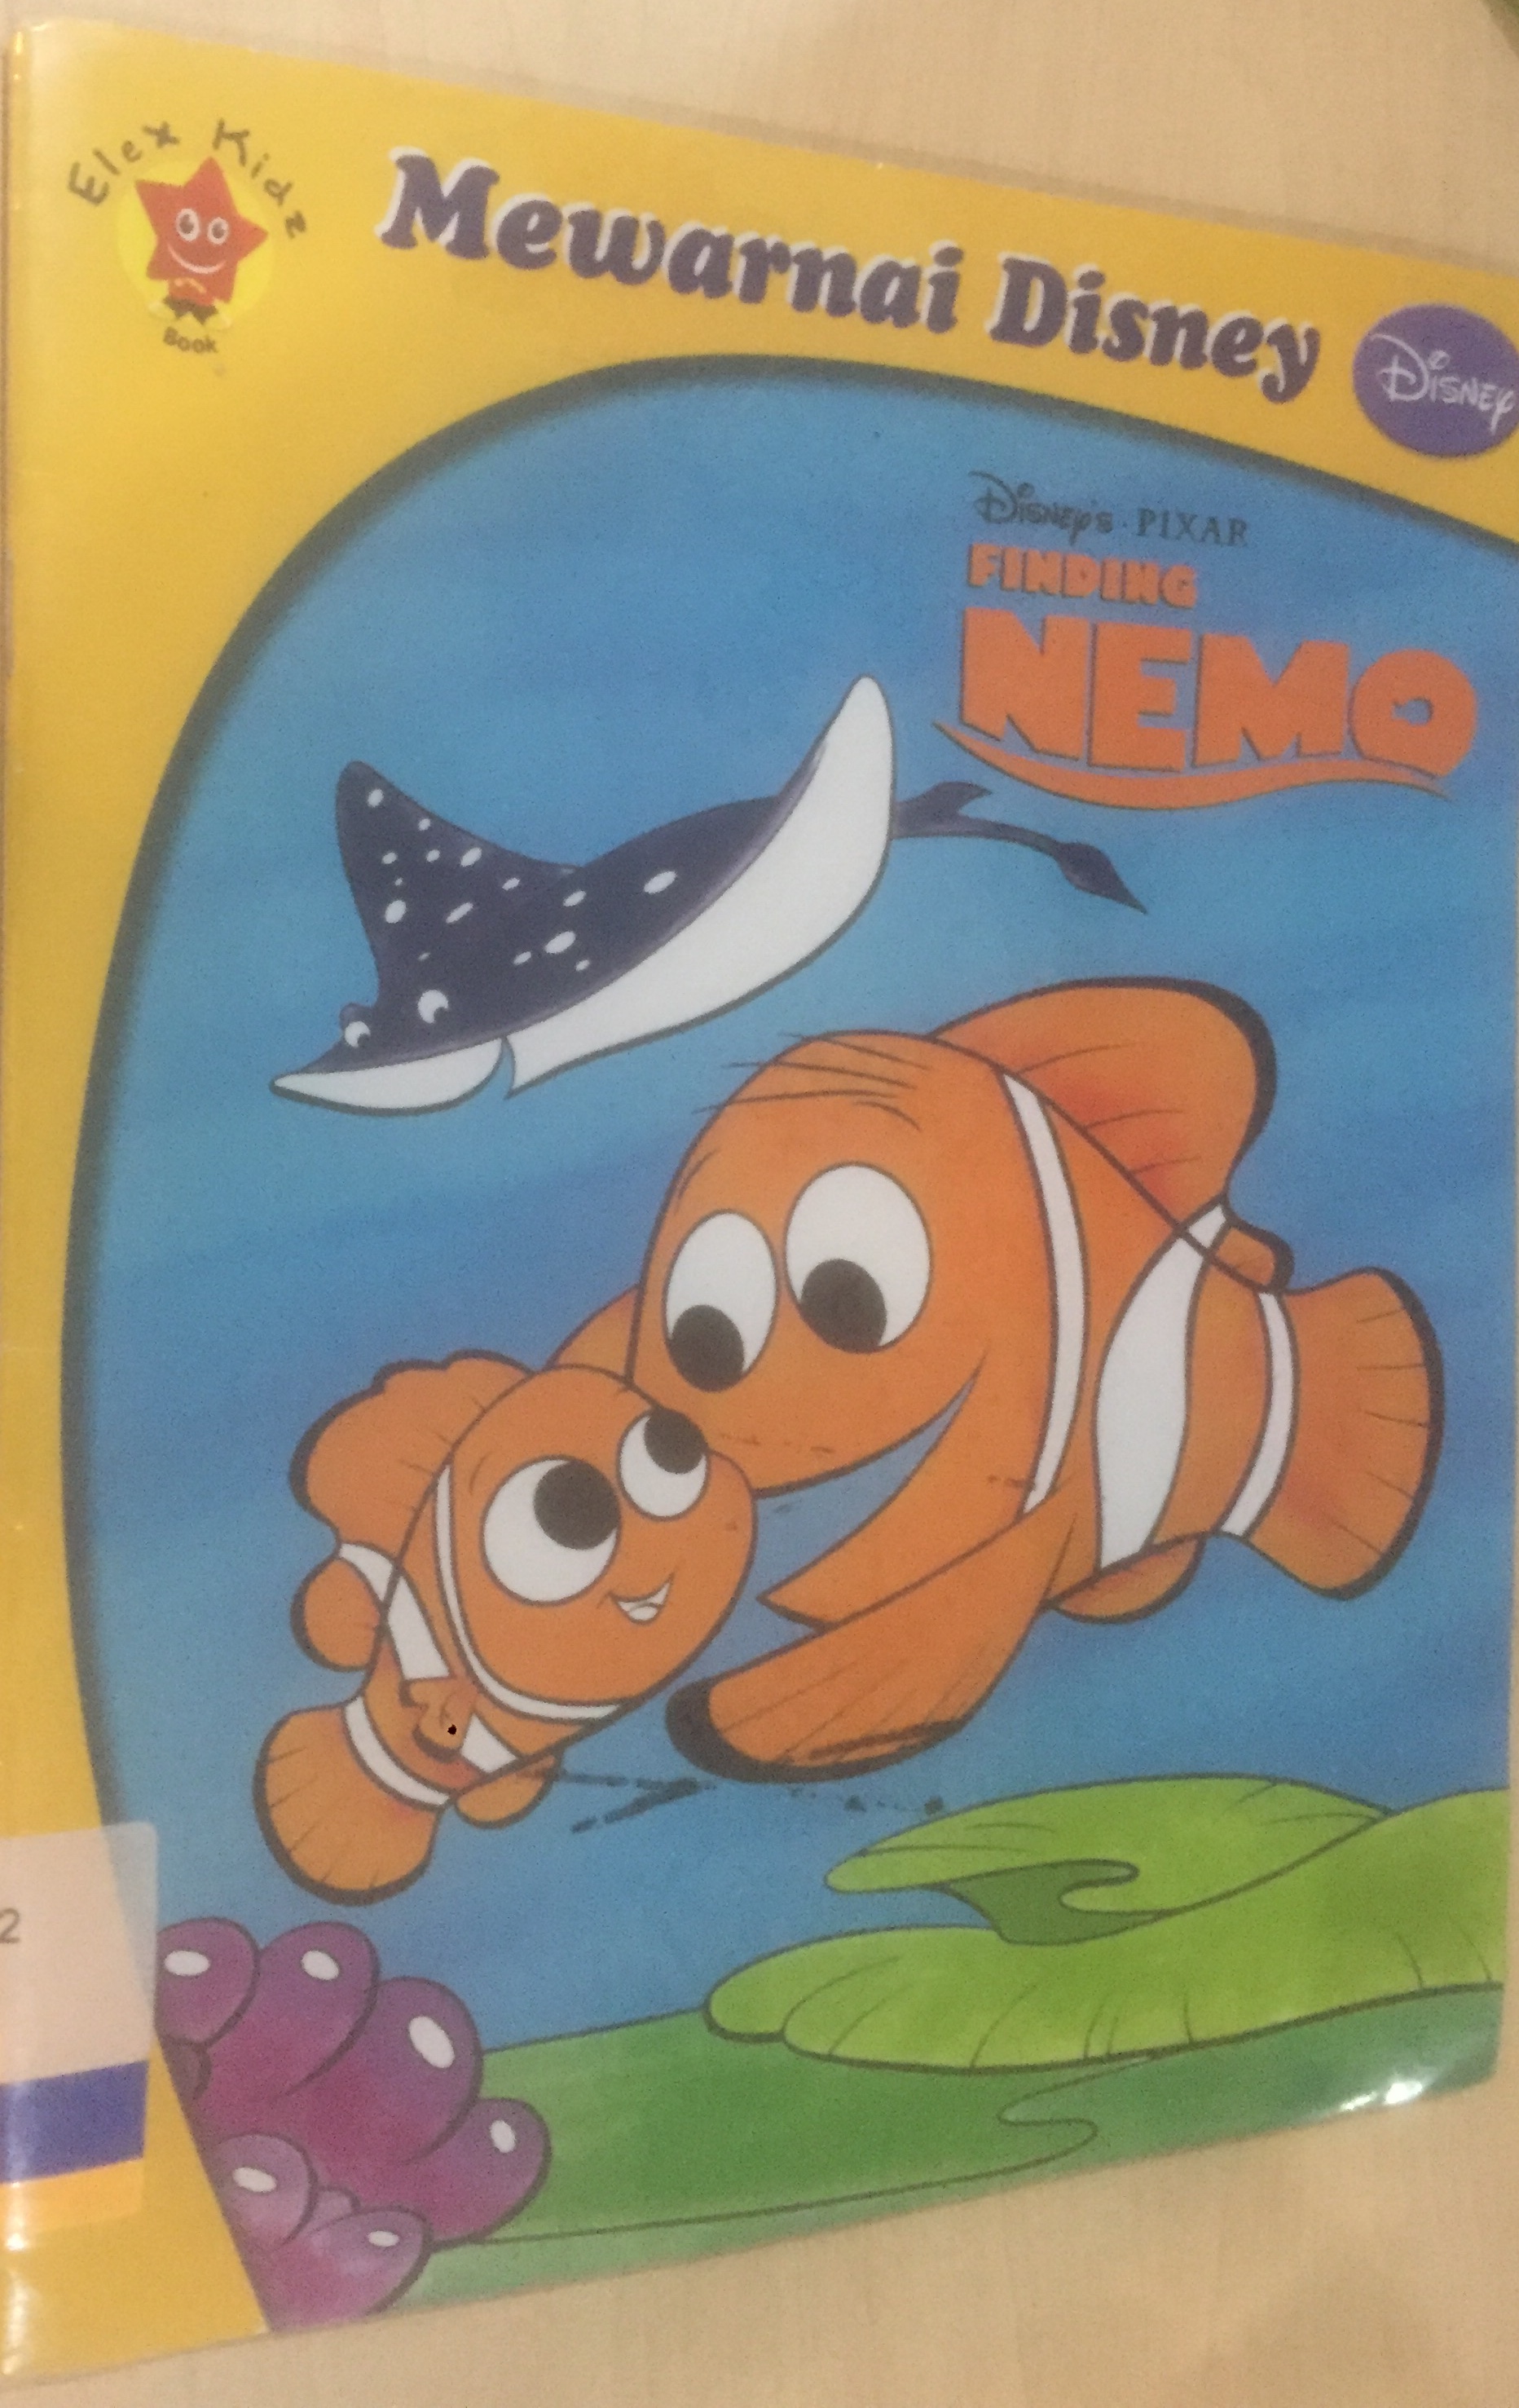 Mewarnai Disney :  Finding Nemo